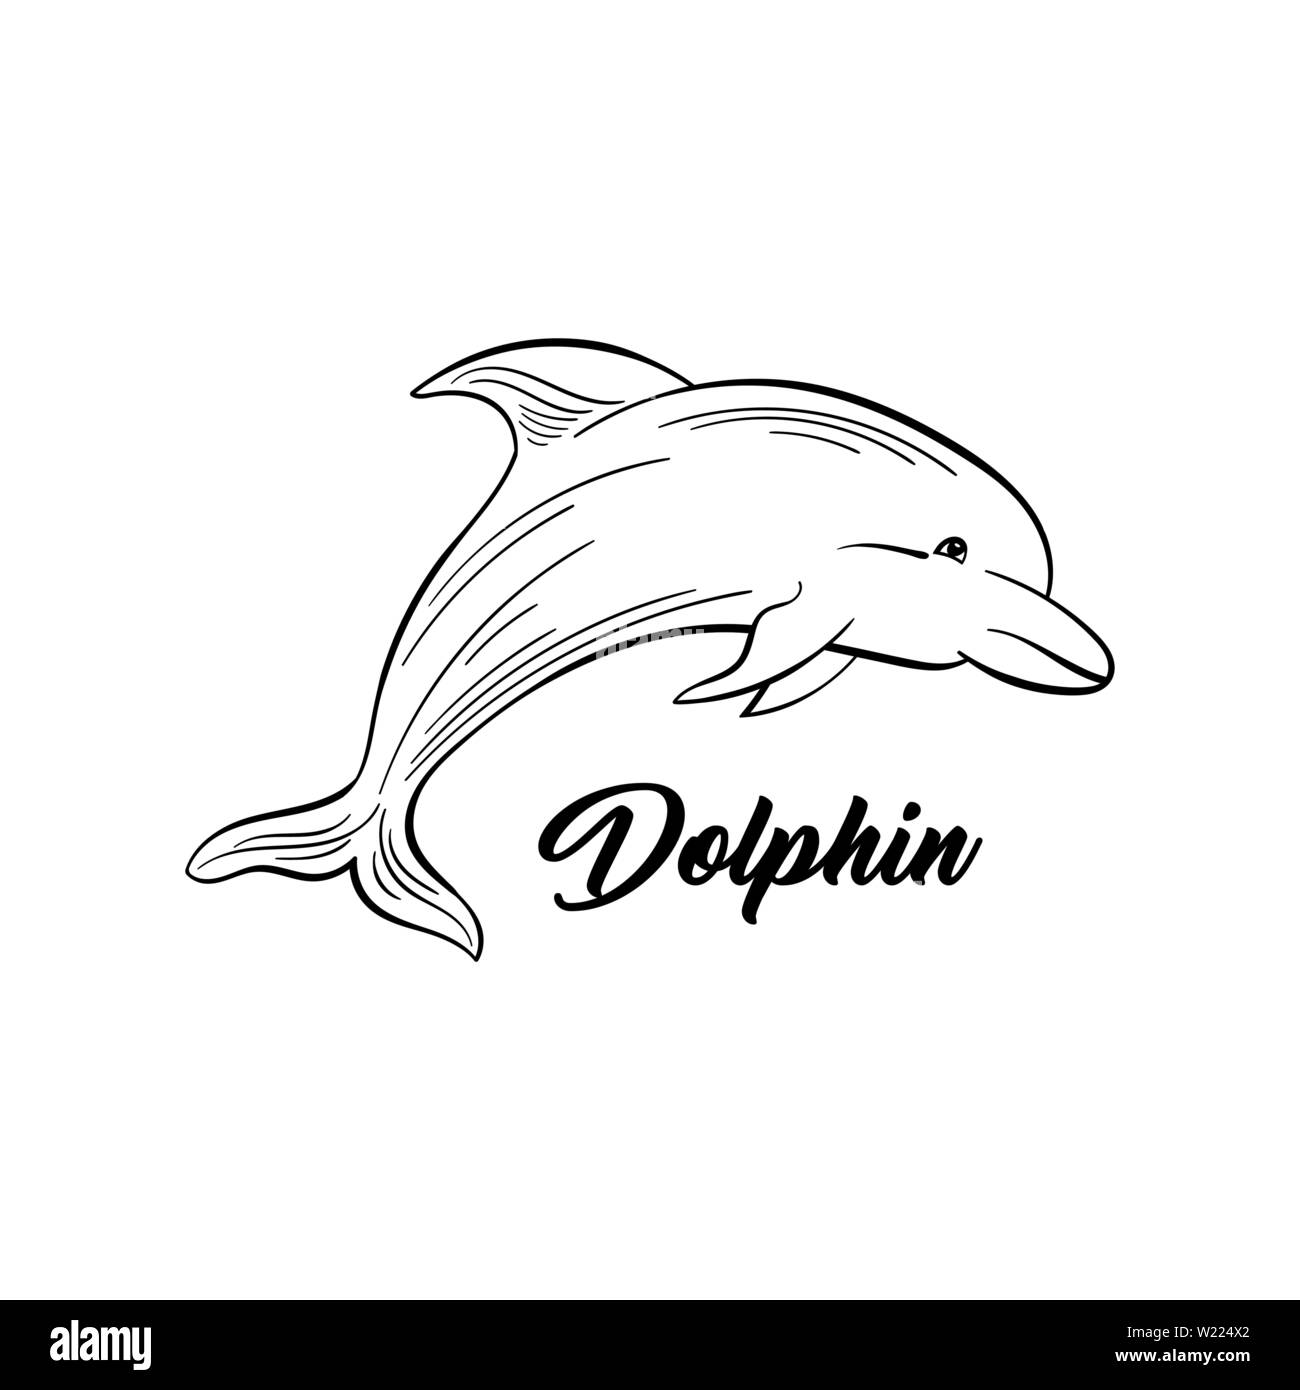 Dolphin monochrome Flachbild Vector Illustration. Meer Tier, intelligente Säugetier freehand Skizze. Salzwasser Kreatur schwarze Tinte Zeichnung. Marine Life, Fauna Vertreter skizziert Umrisse mit Beschriftung Stock Vektor